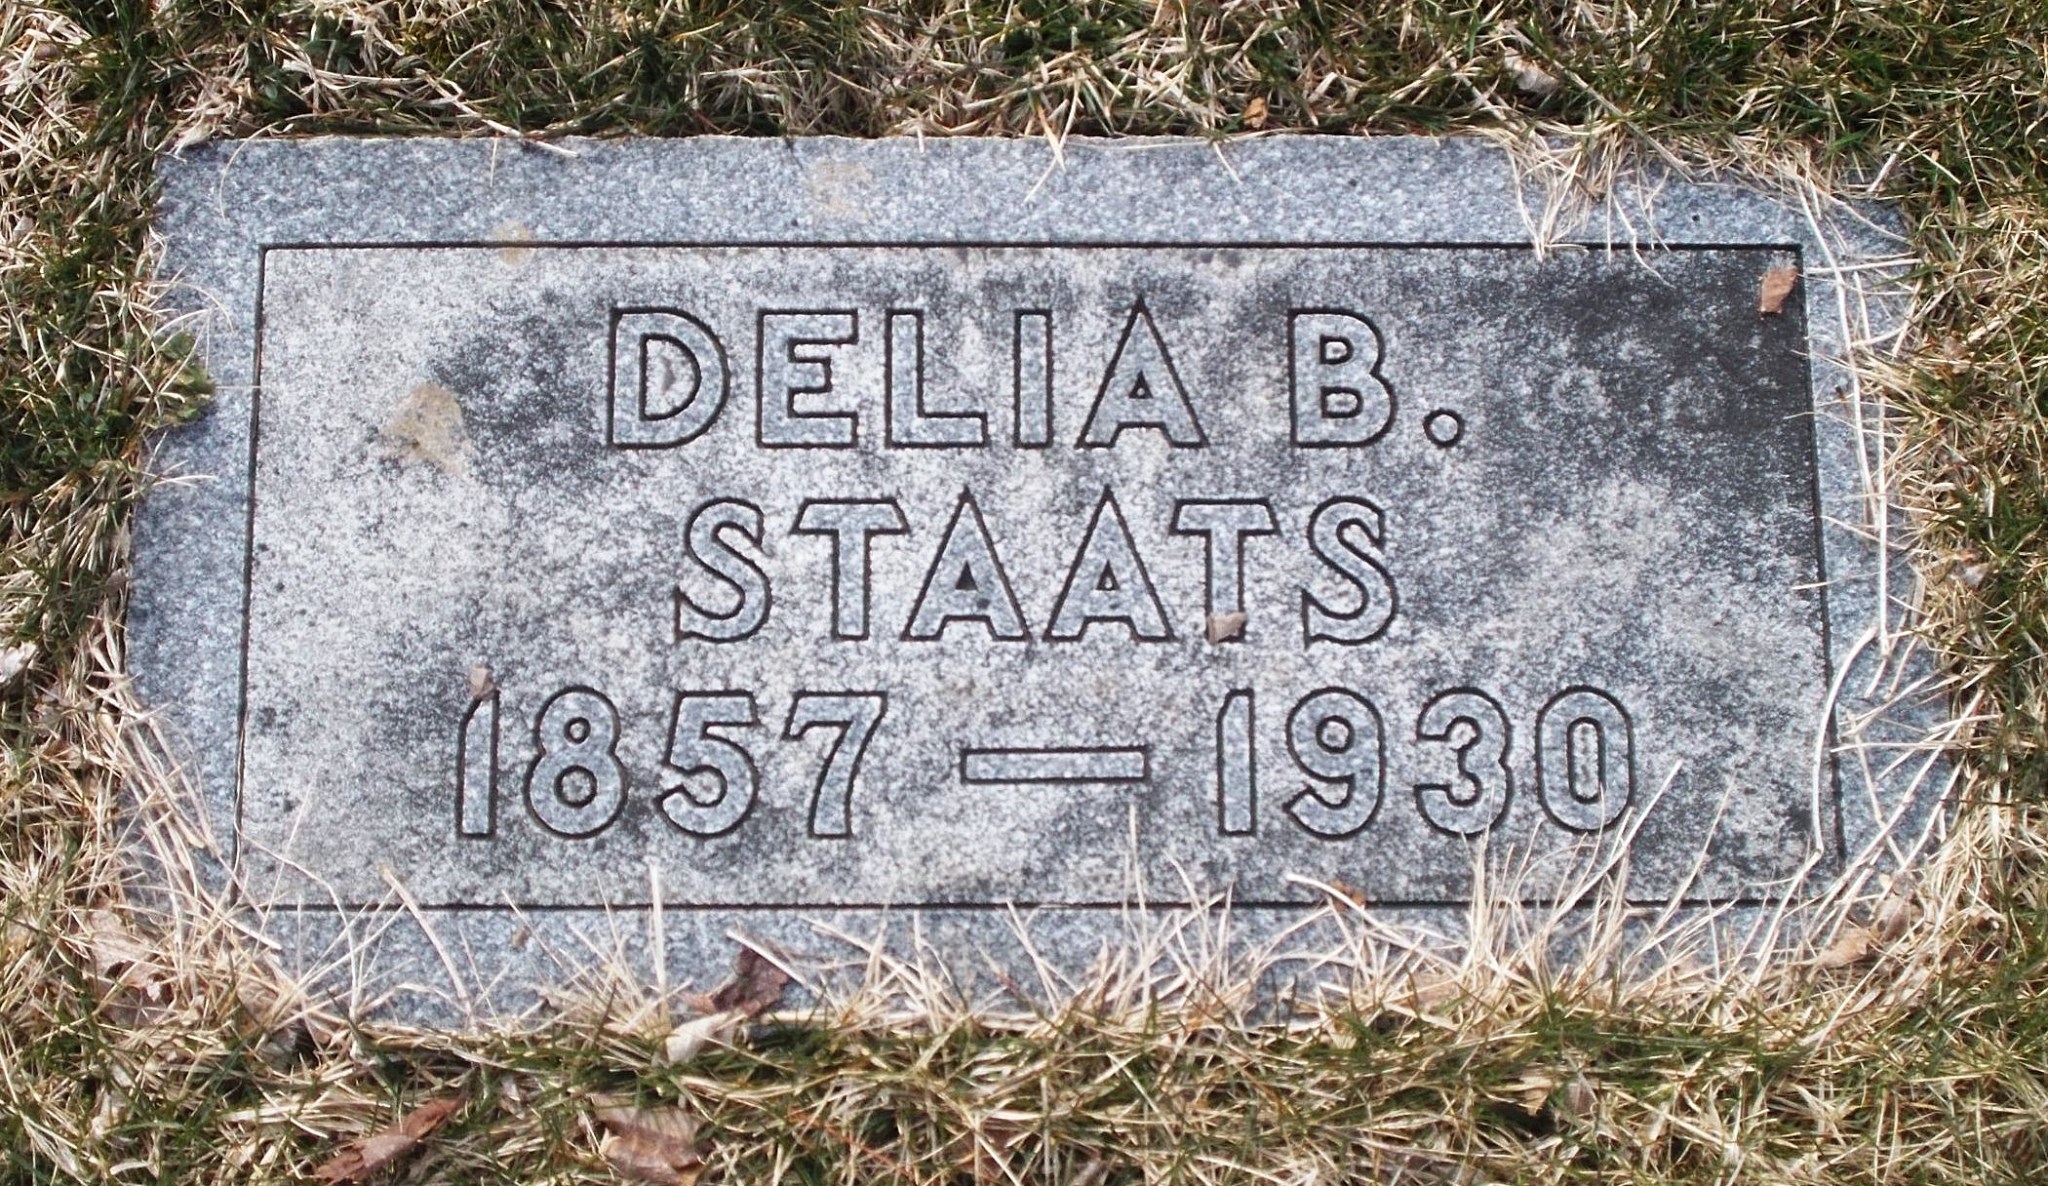 Delia B Staats